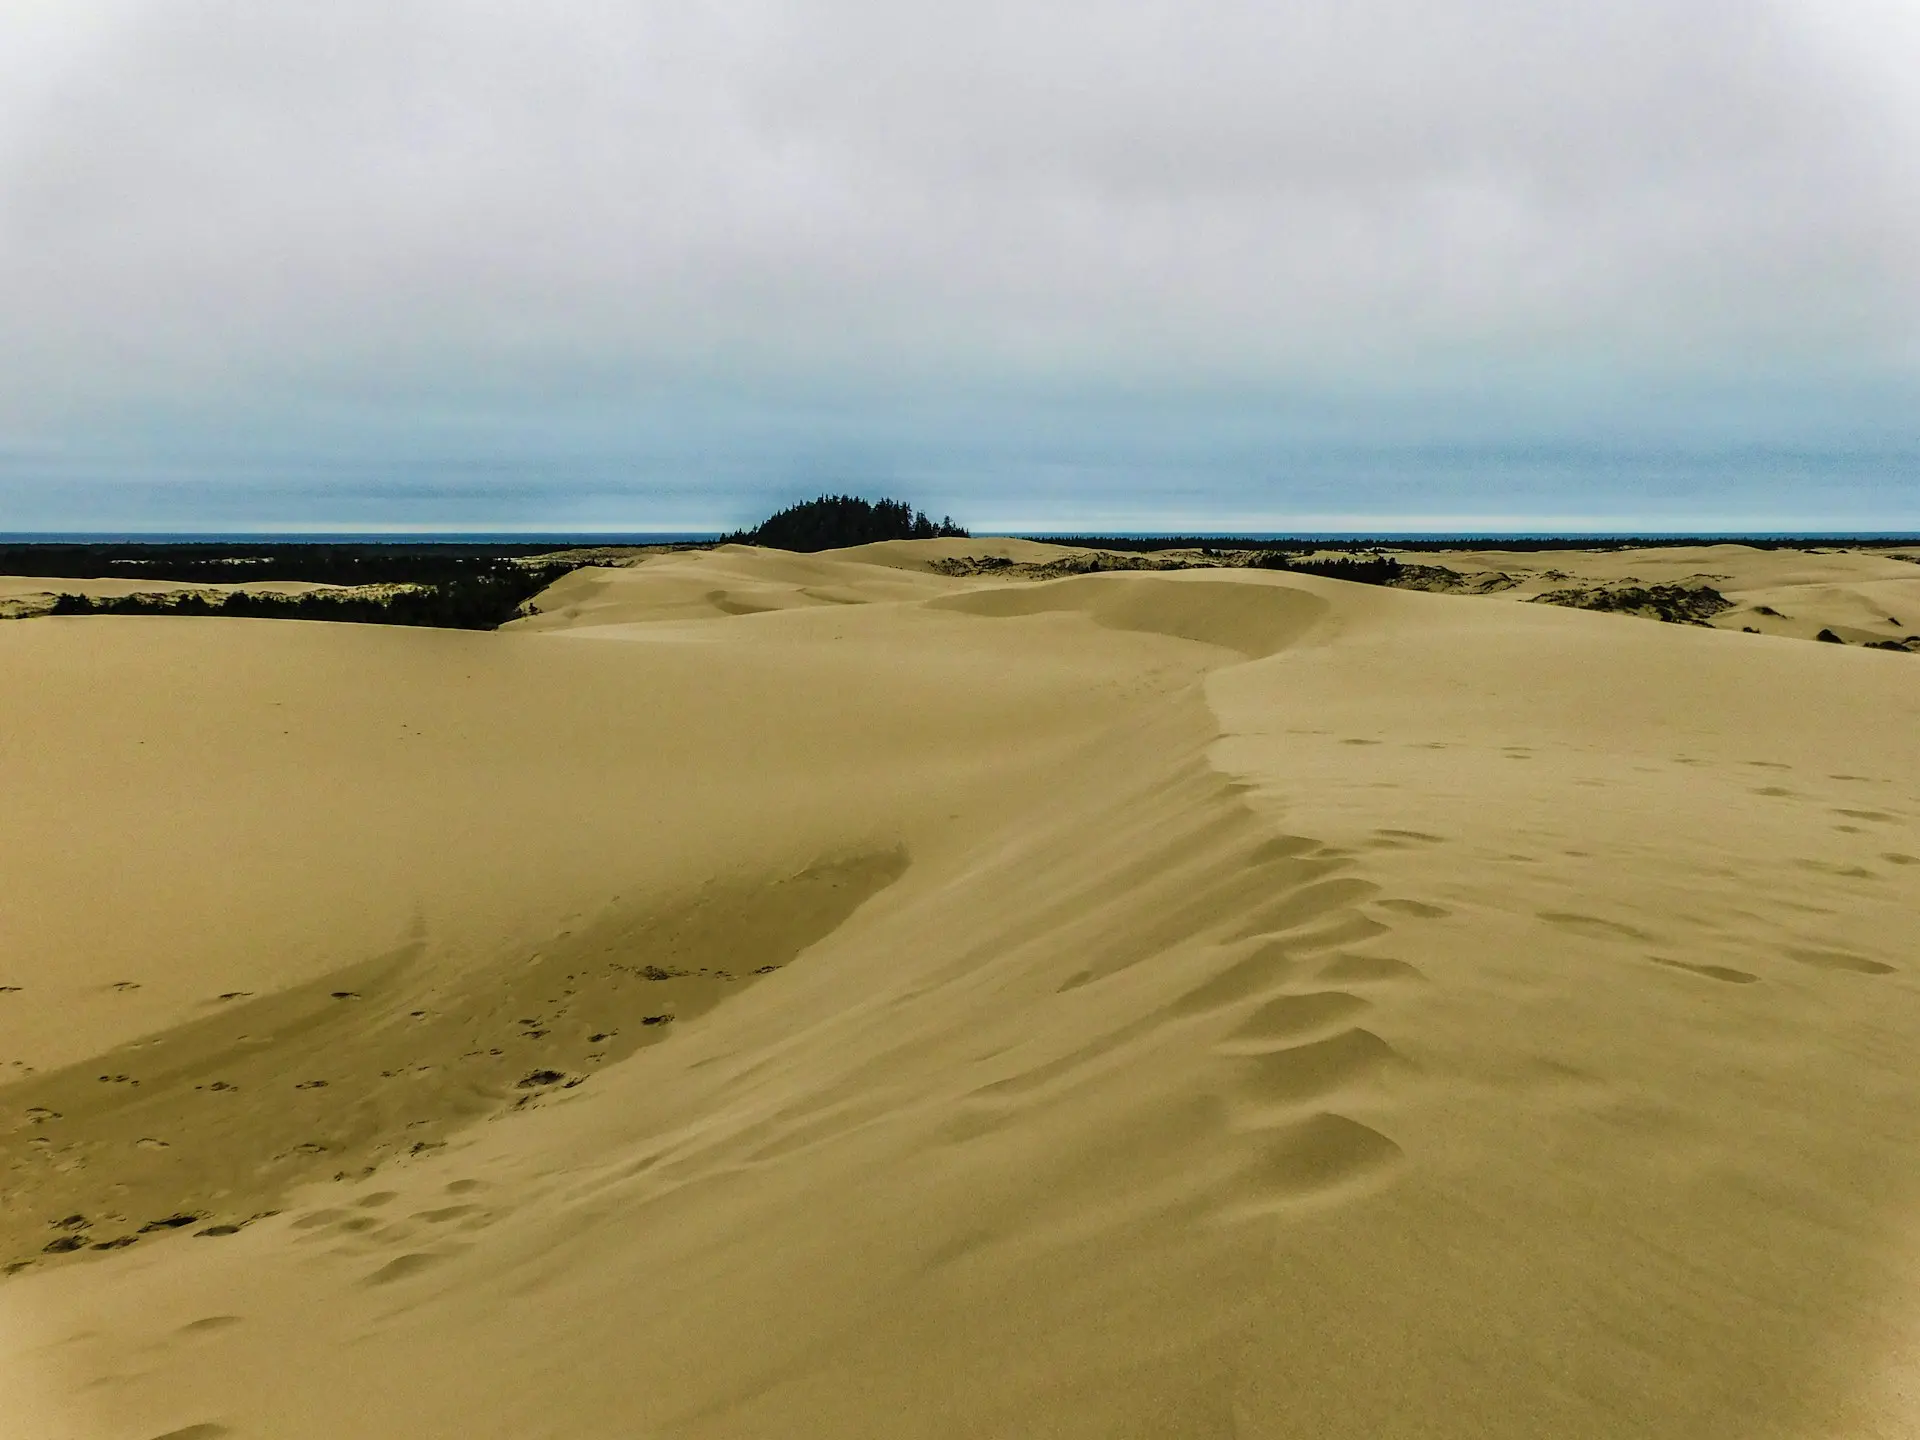 Ce projet écologique a inspiré l'histoire de Dune